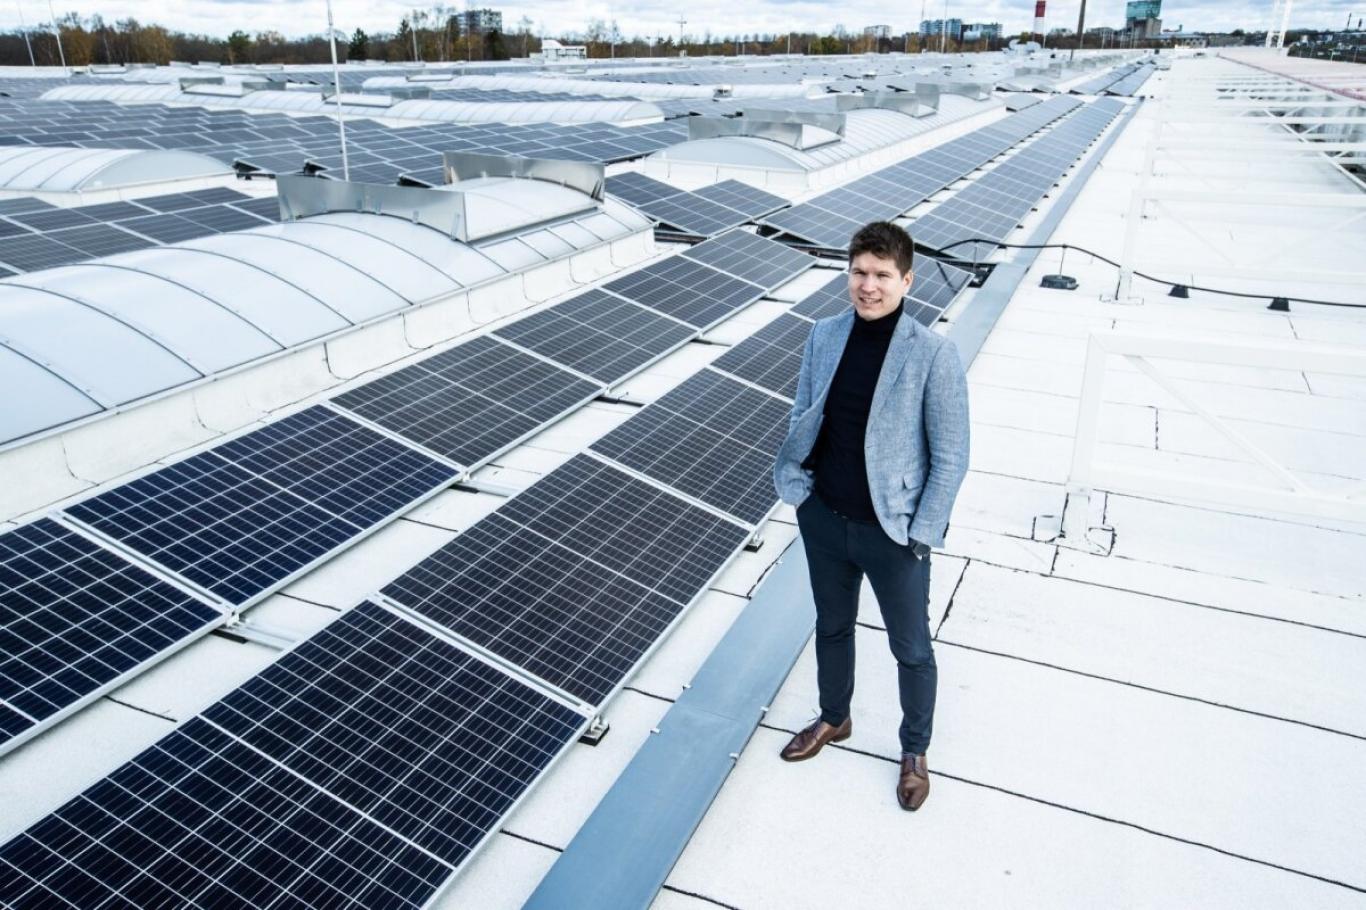 Päikesejaamadega oma energiatootmisse investeerinud ettevõtted loevad kokku kümneid tuhandeid säästetud eurosid. Kõrge elektrihind on tekitanud uue päikeseparki